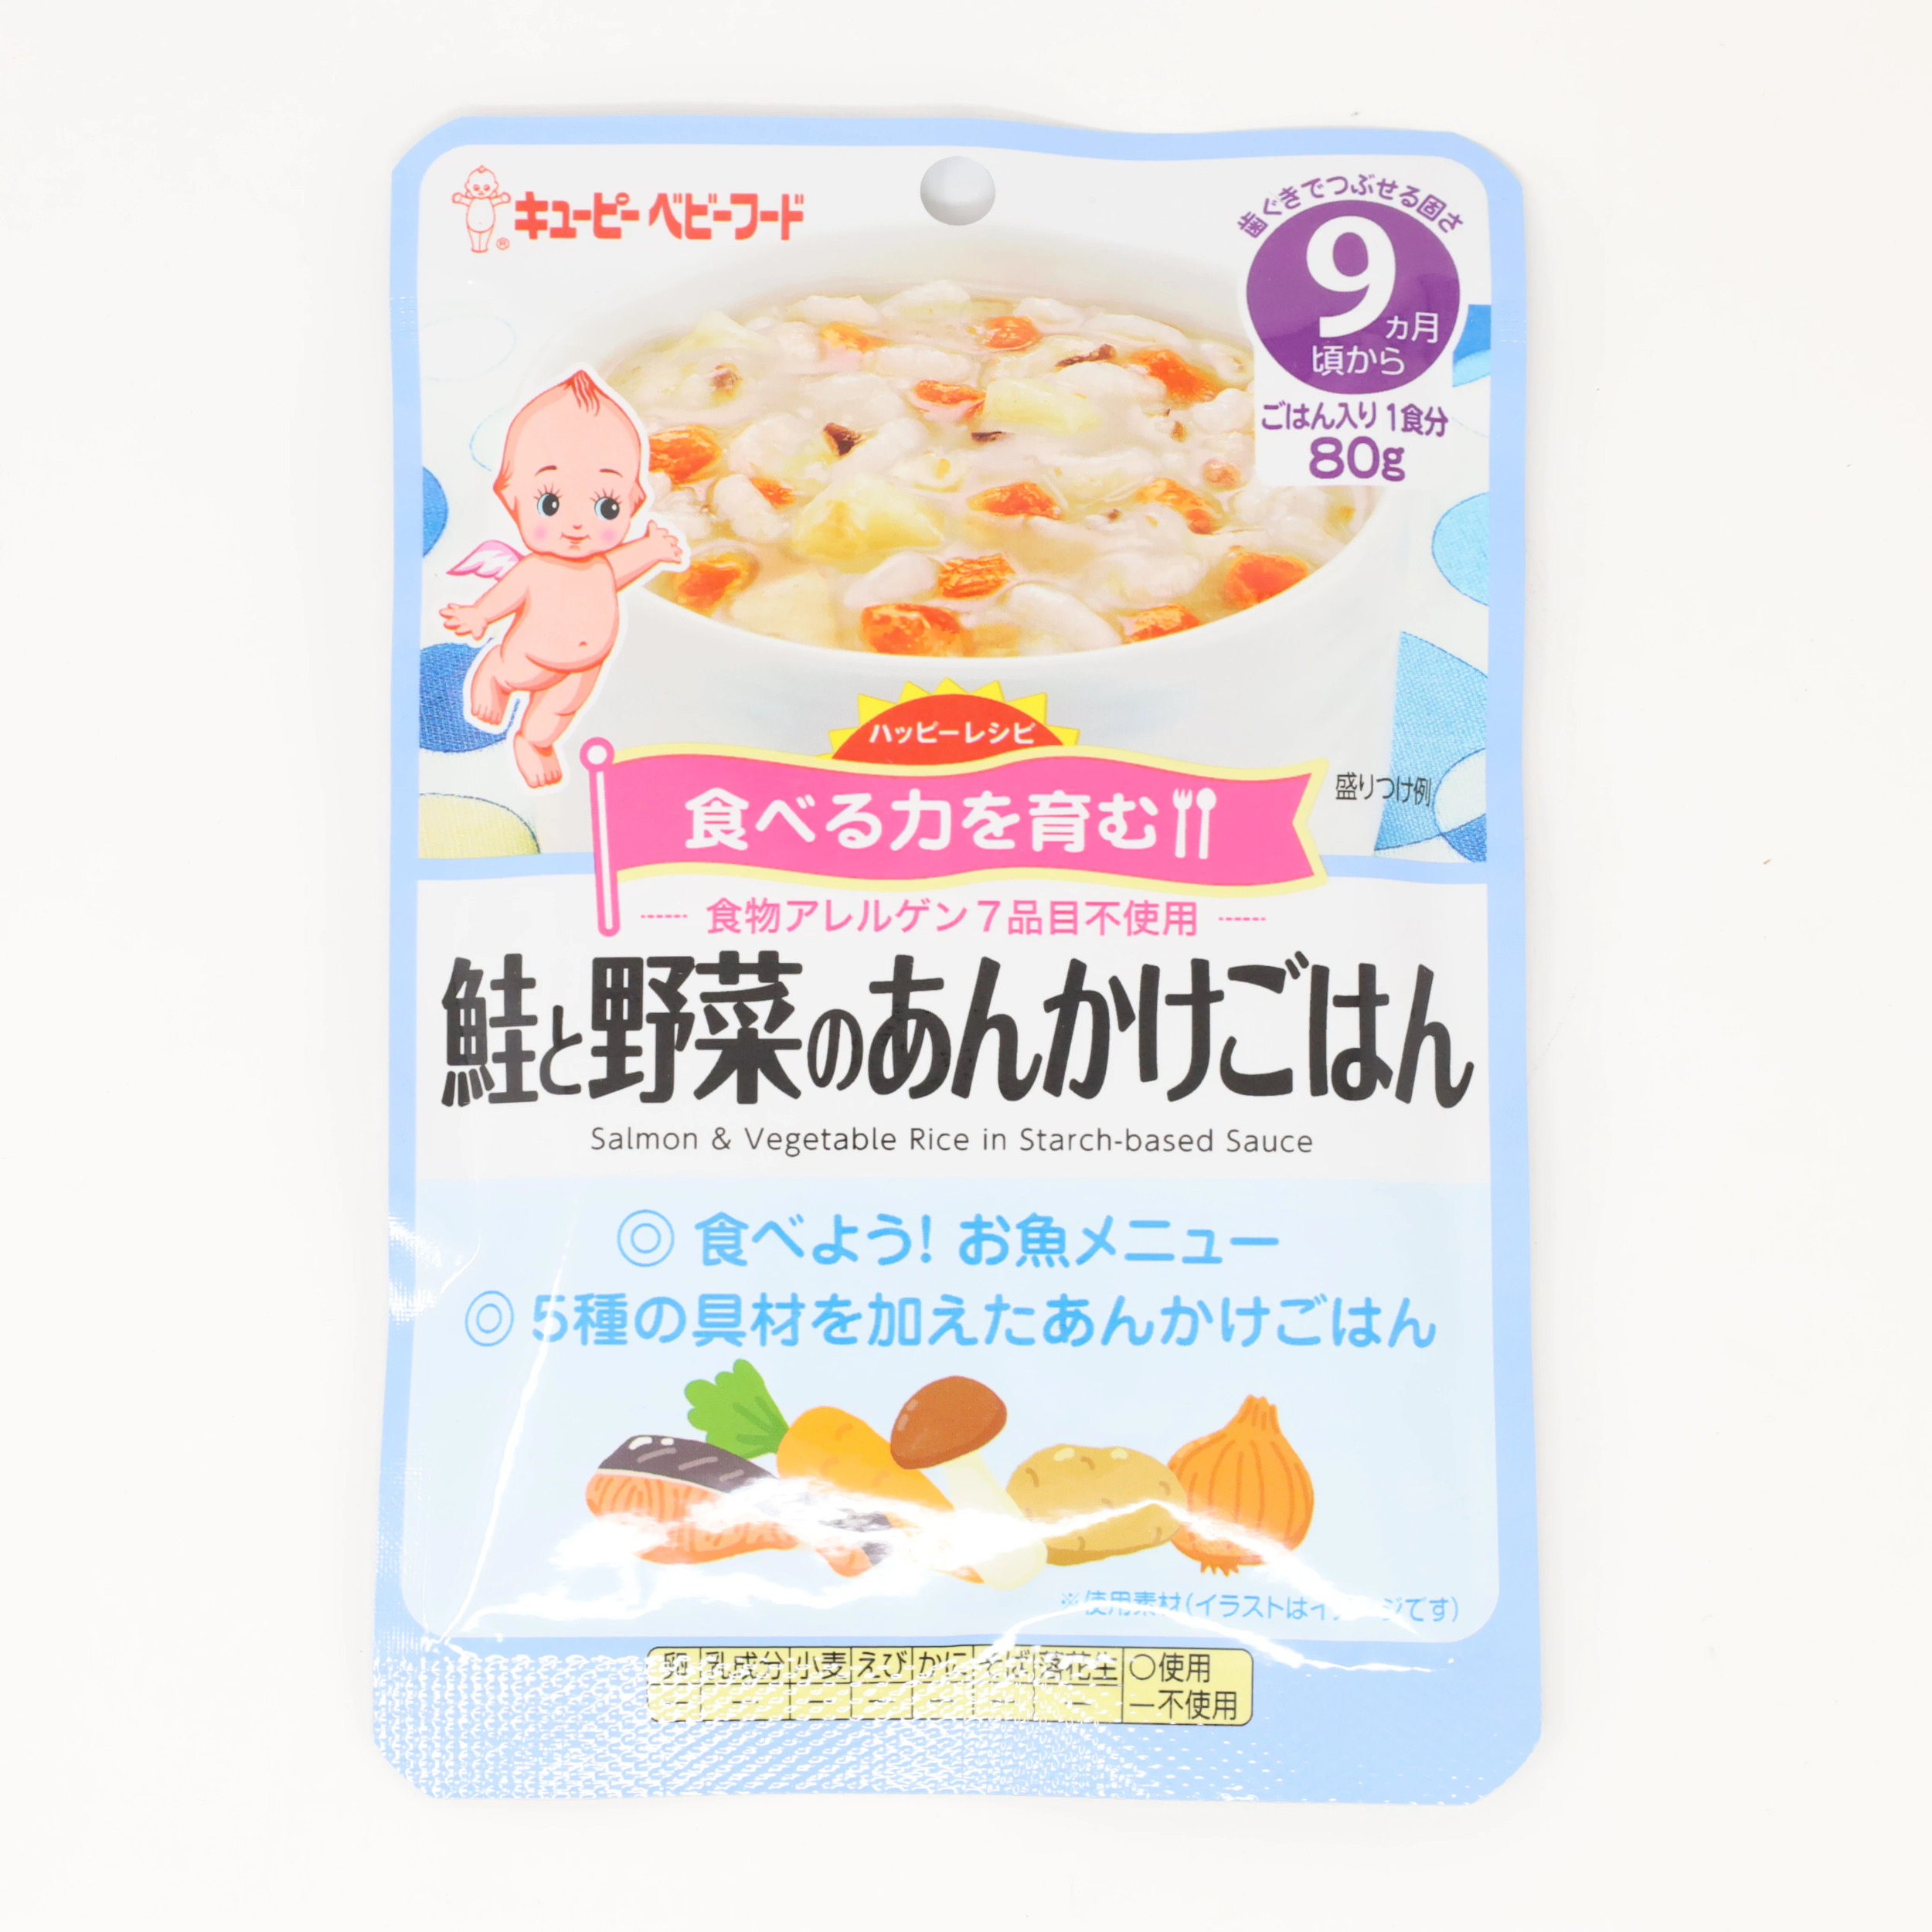 Kewpie Baby Foods Sake To Yasai No Ankakegohan 2 oz 80g Walmart Com